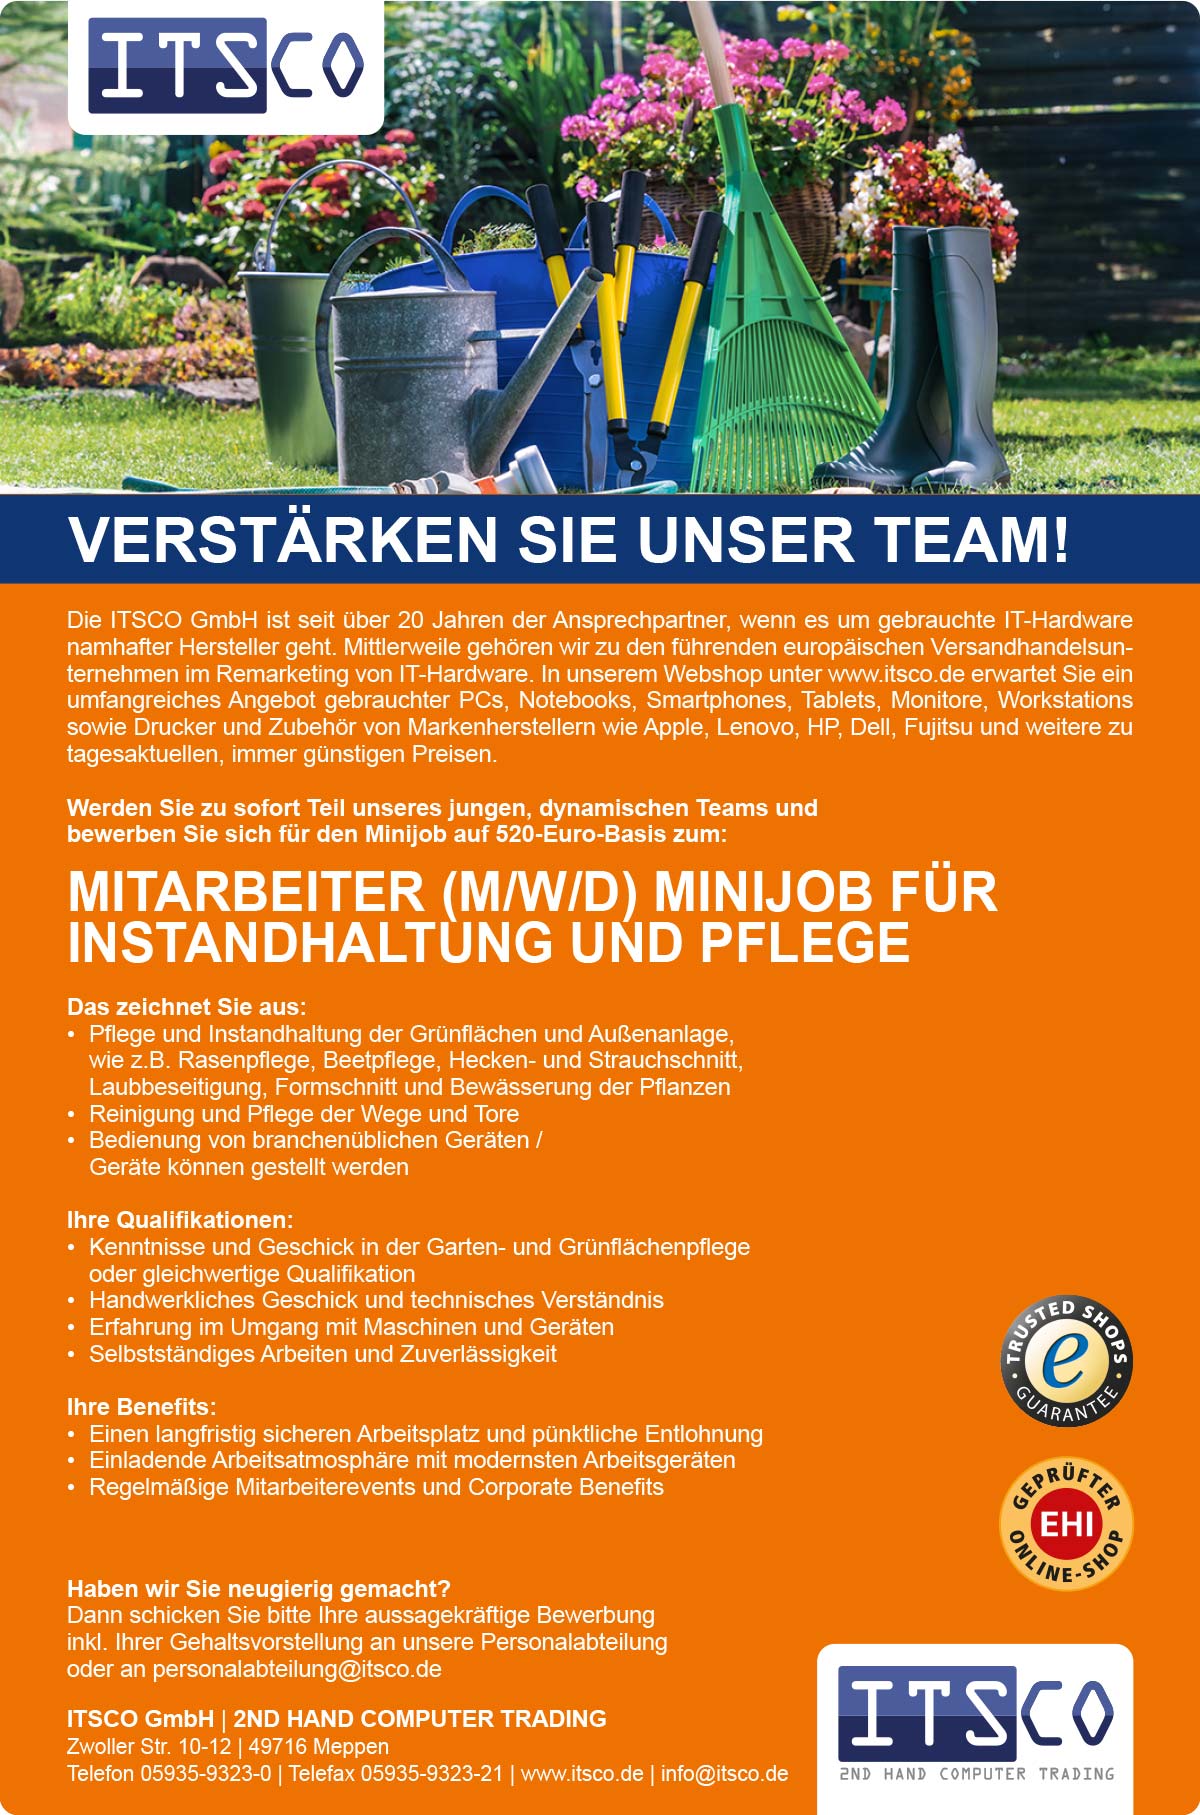 Mitarbeiter (m/w/d) für Instandhaltung und Pflege Minijob in Meppen